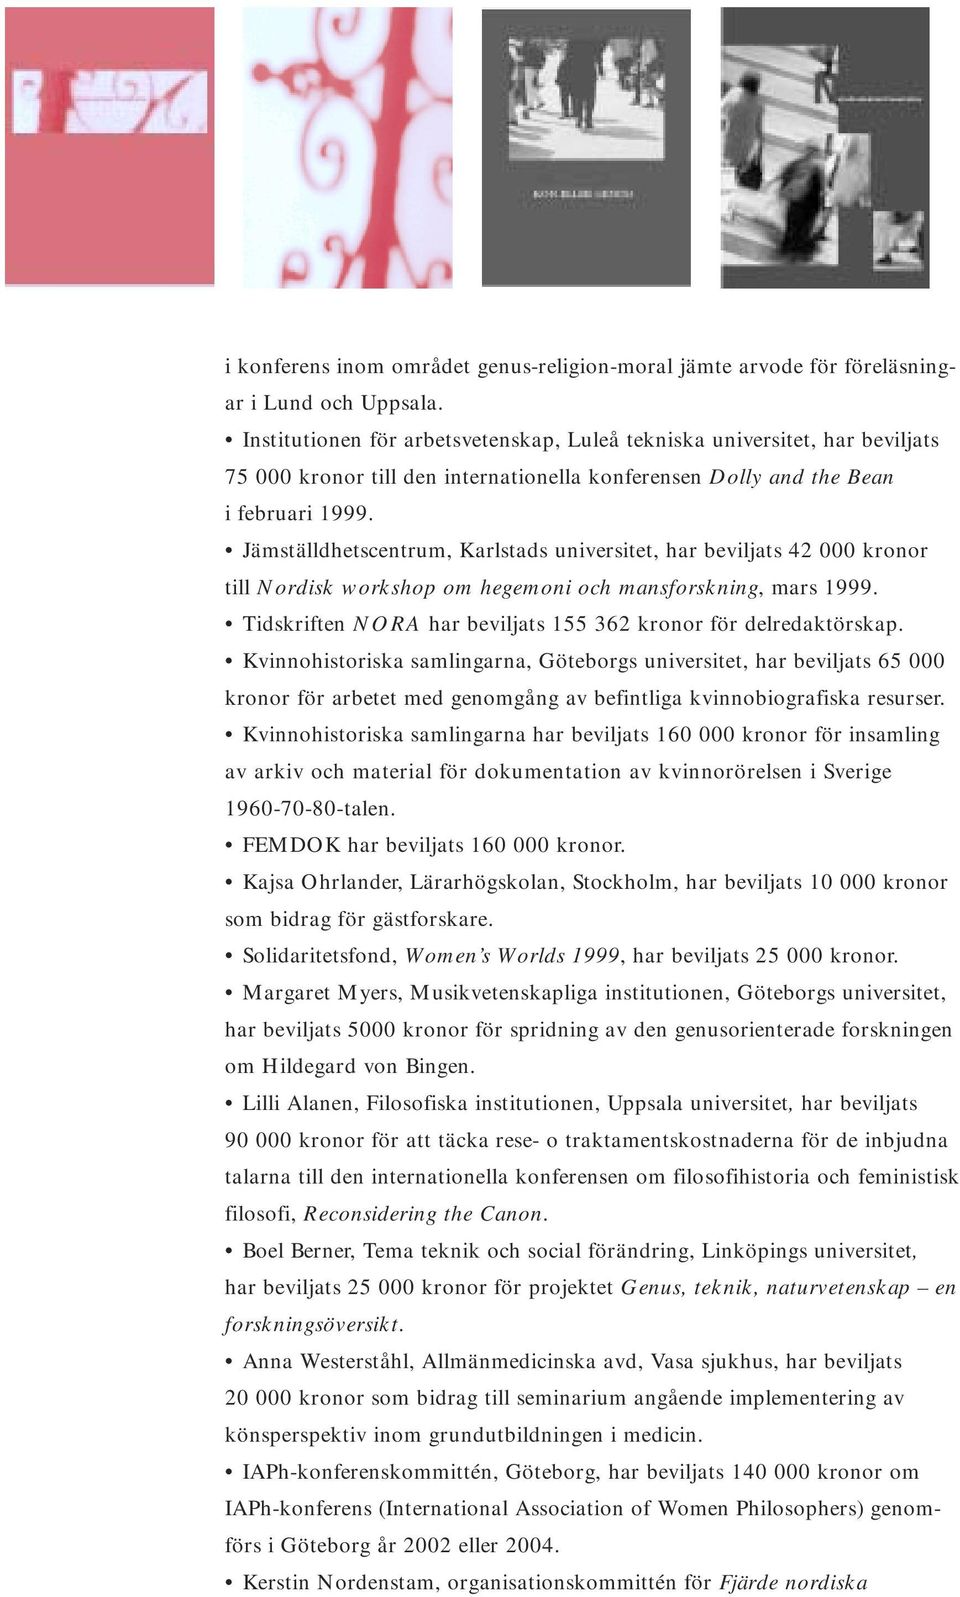 Jämställdhetscentrum, Karlstads universitet, har beviljats 42 000 kronor till Nordisk workshop om hegemoni och mansforskning, mars 1999.